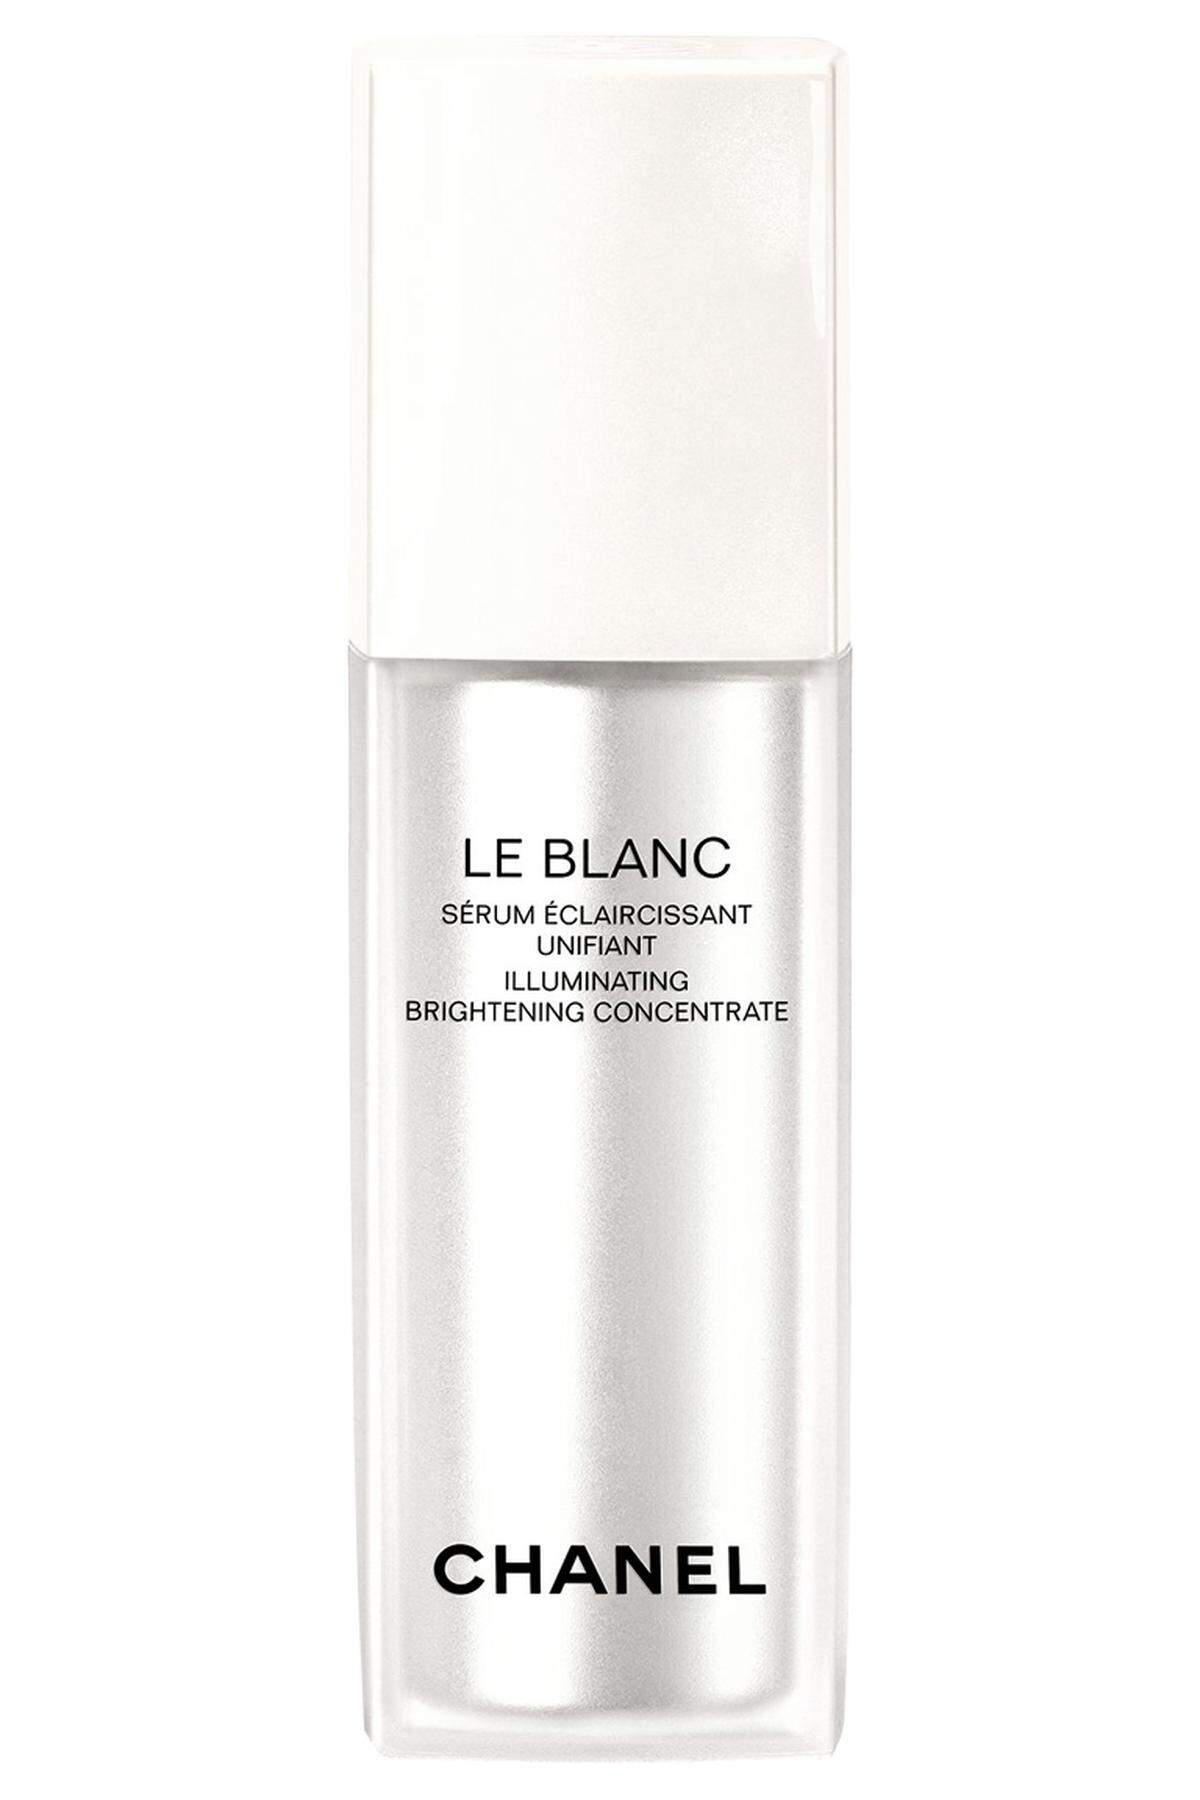 „Le Blanc“ von Chanel, 119 Euro, im Fachhandel erhältlich